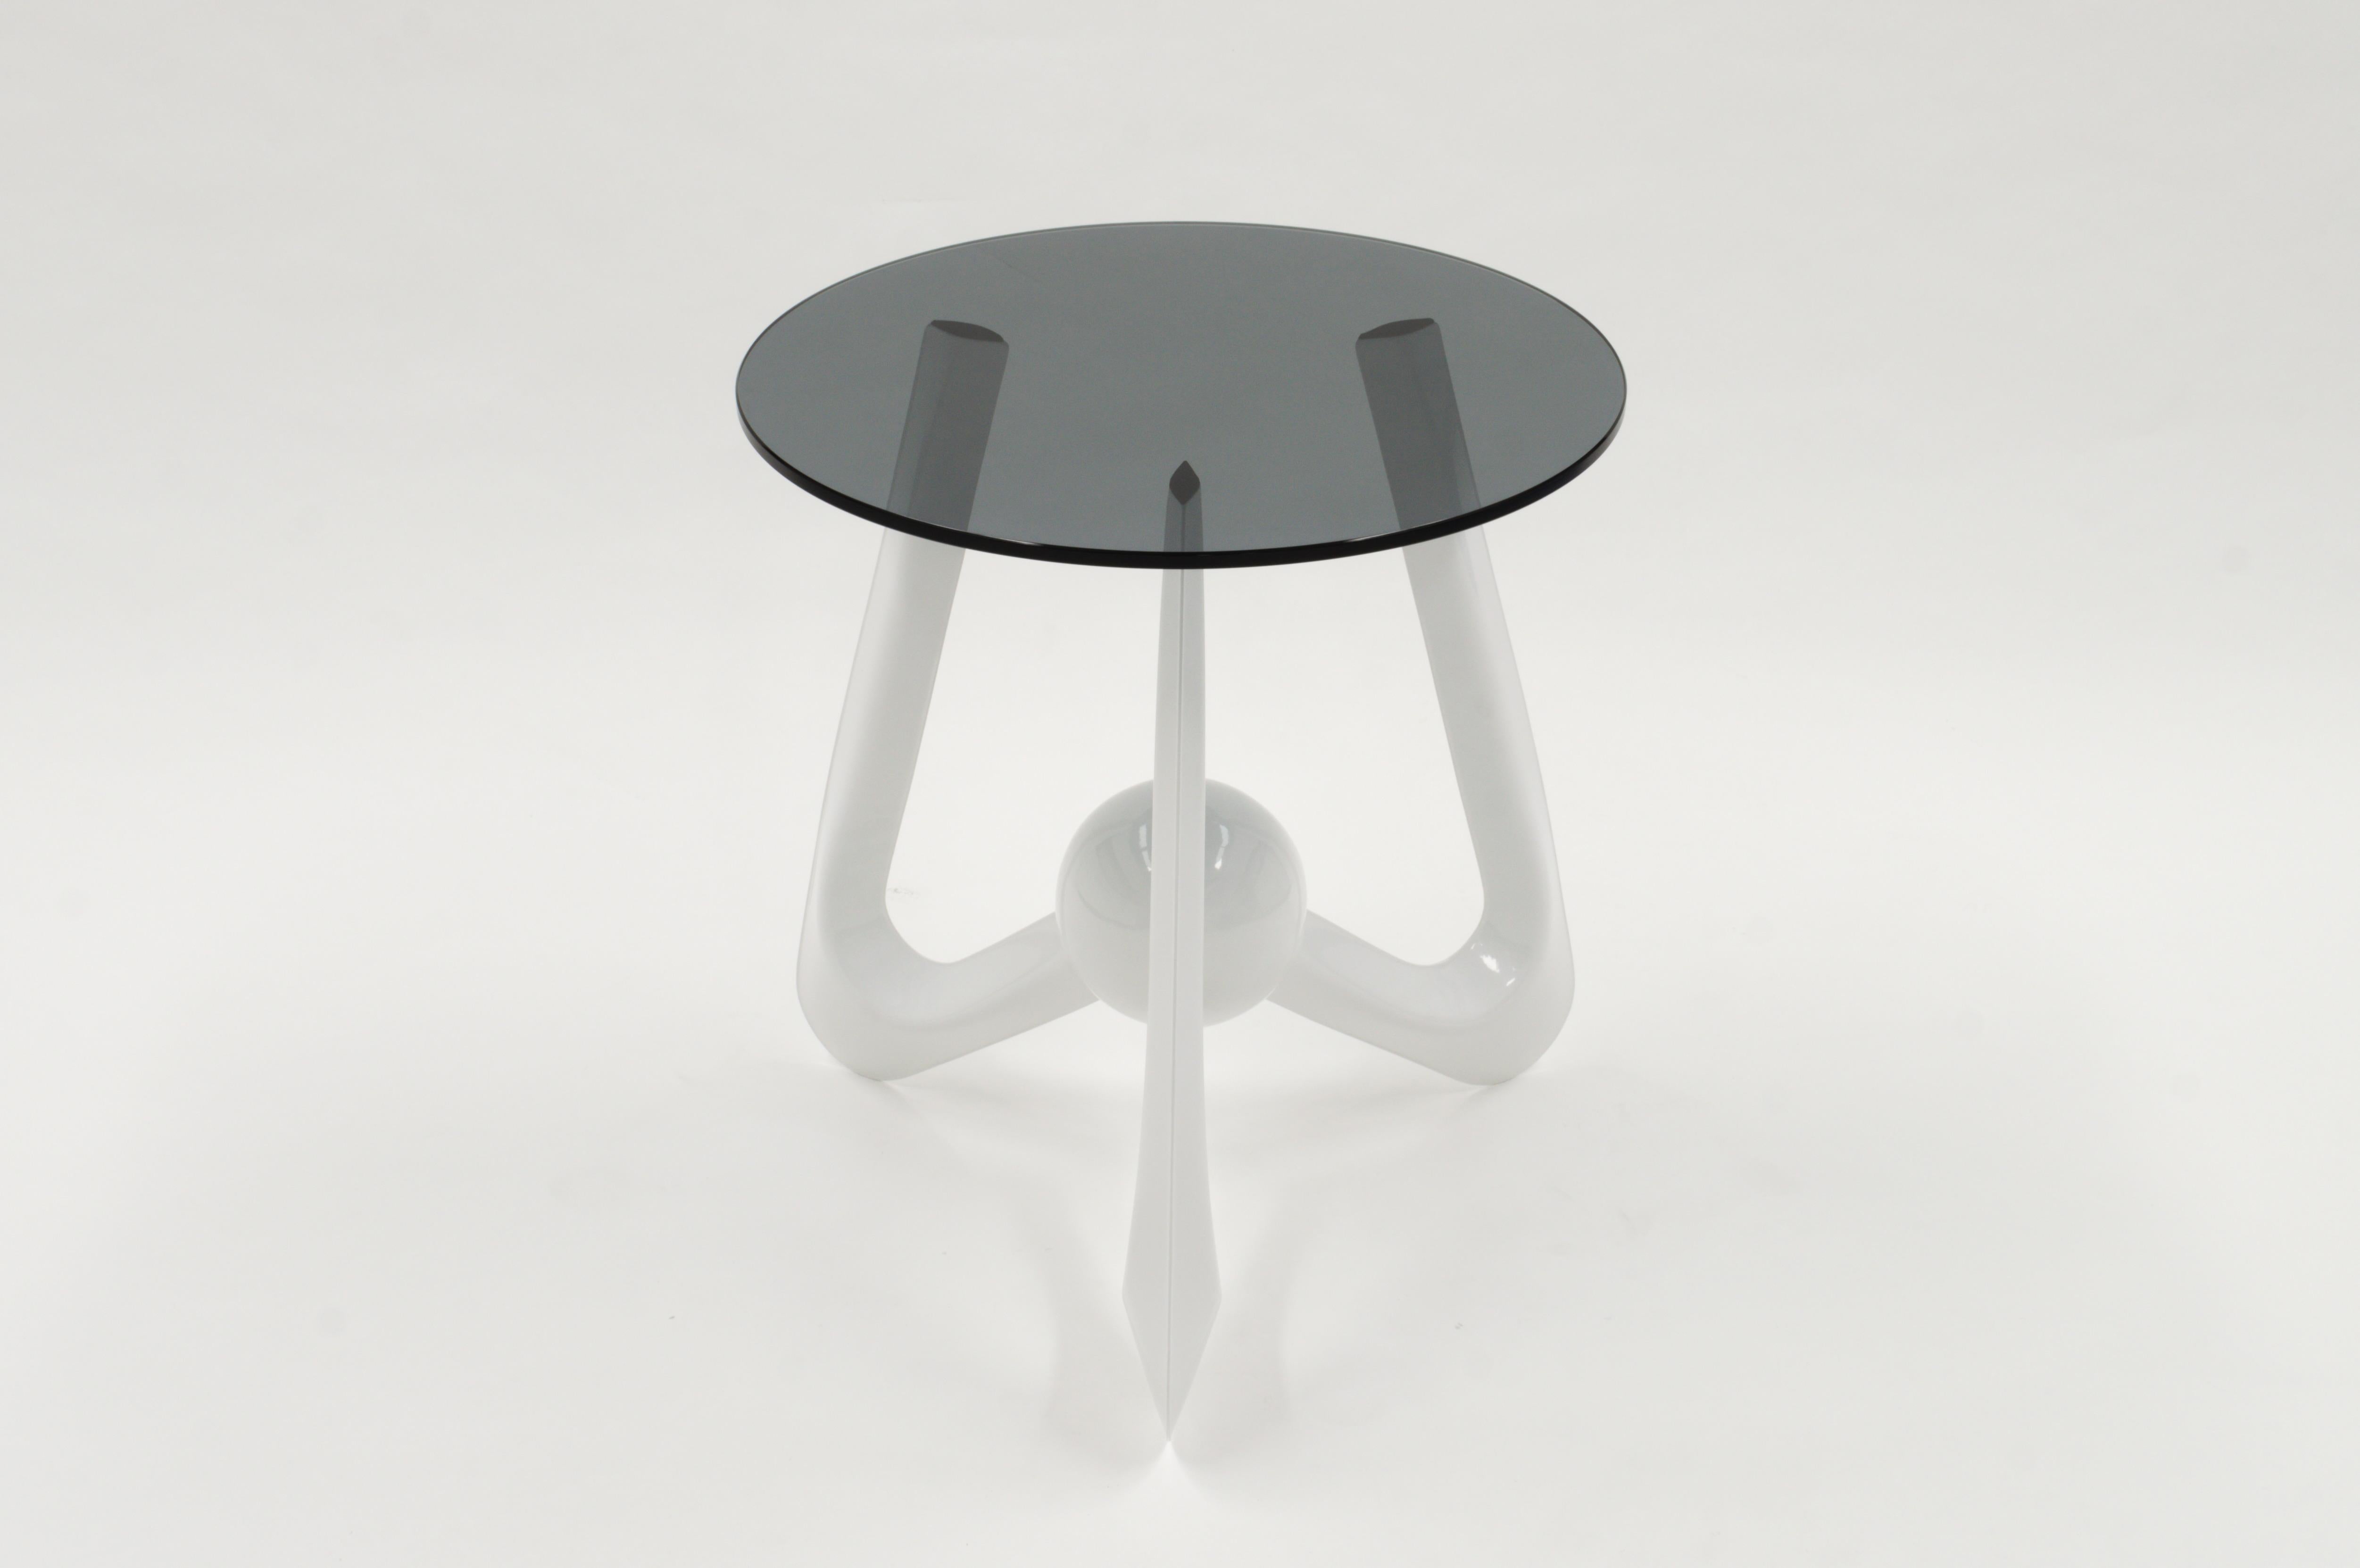 Table tripode futuriste dotée de pieds en acier gonflés, formés par une injection précise d'air comprimé. Le gonflage du métal permet de créer des formes tridimensionnelles complexes extrêmement résistantes pour leur poids, même si le métal avant le